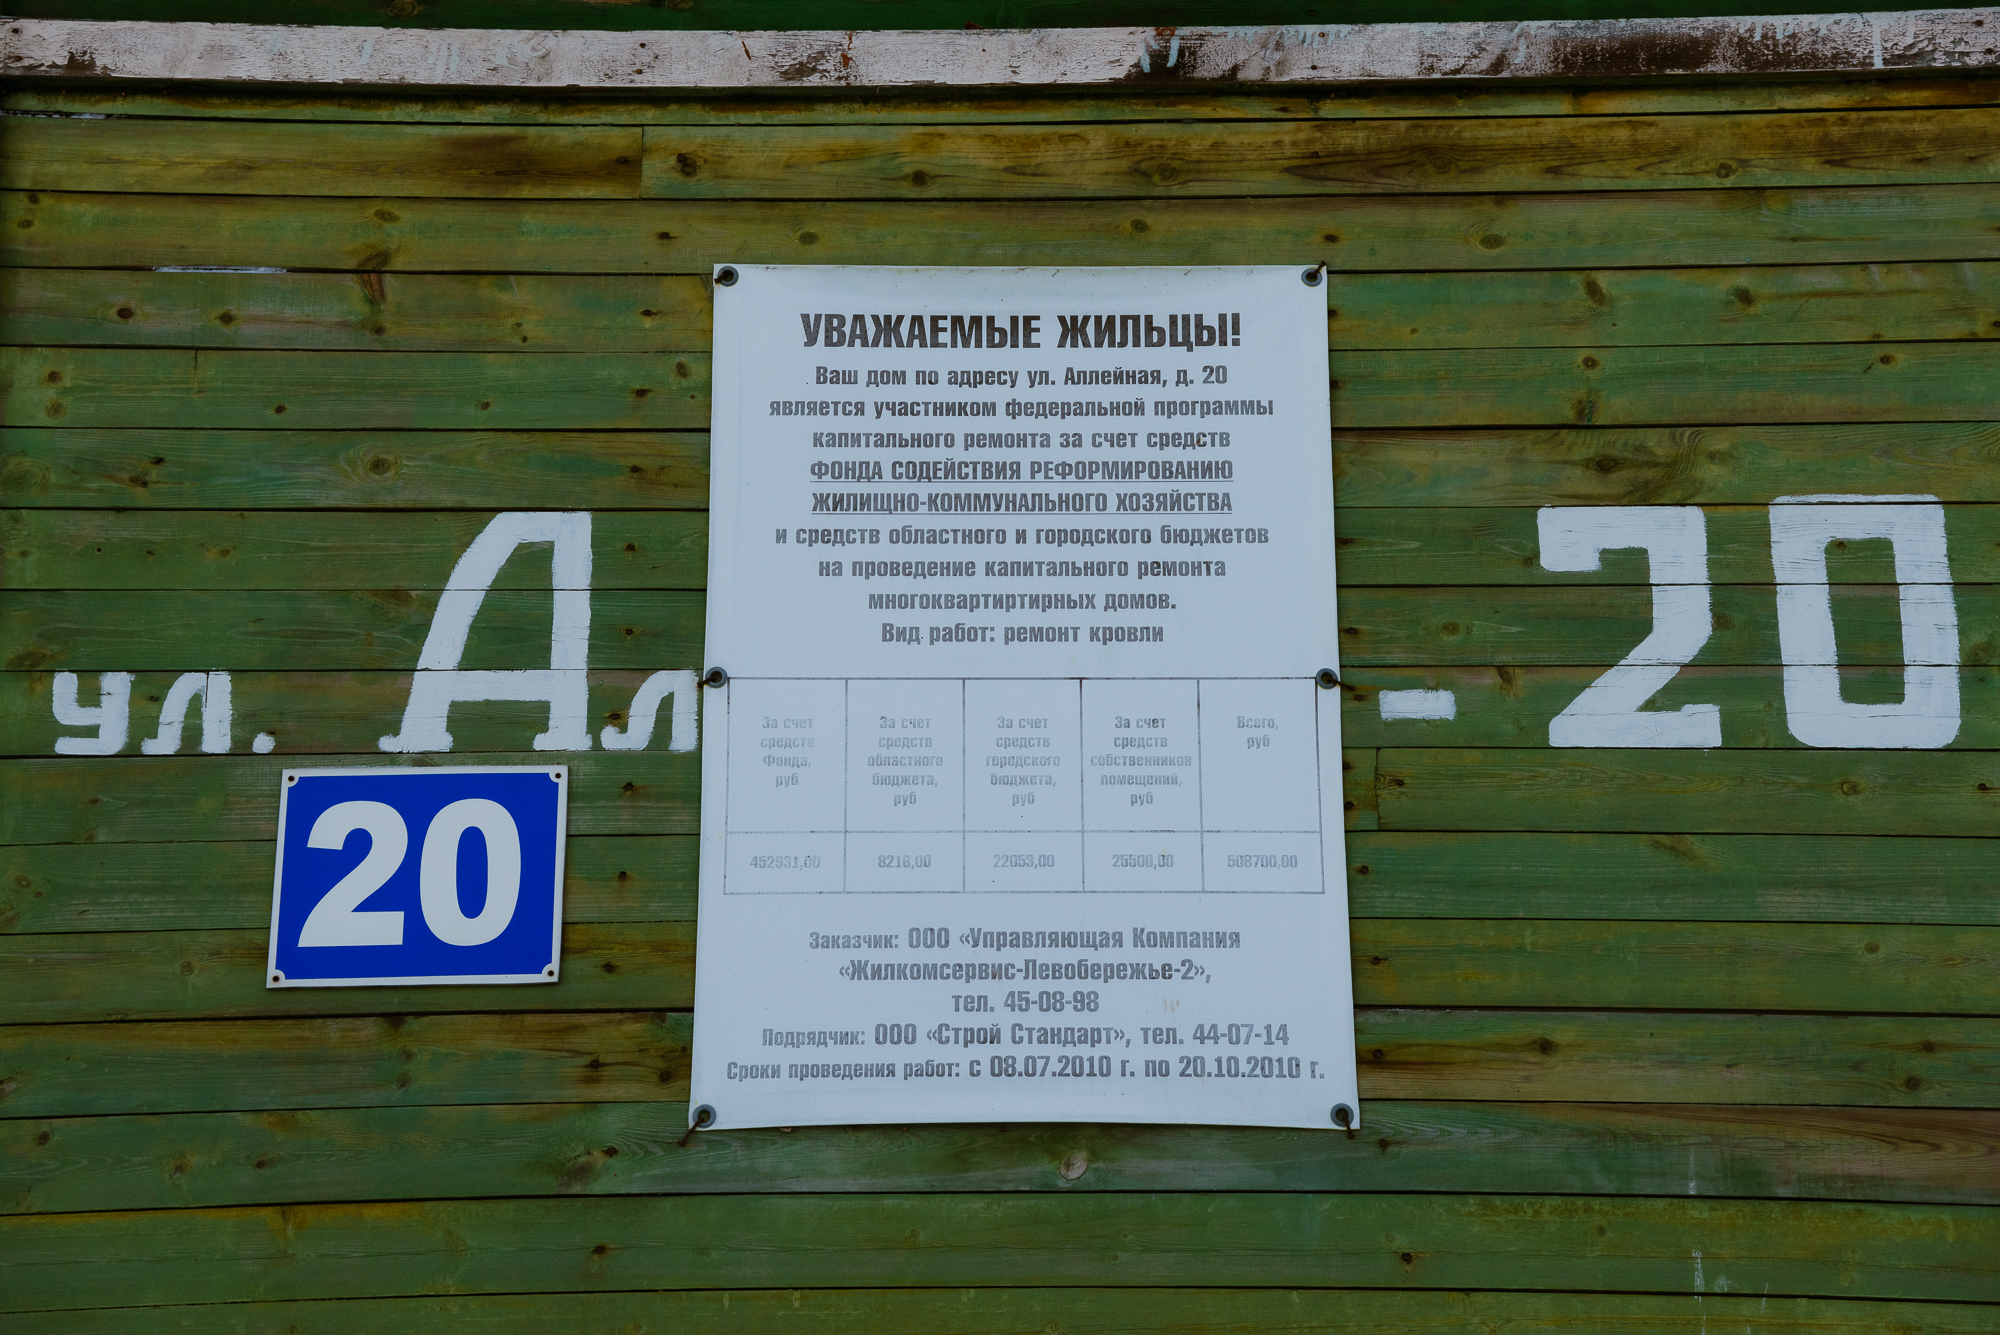 И на улице Аллейной, и на Адмирала Макарова на домах часто встречаются такие таблички о том, что должны были проводить ремонты